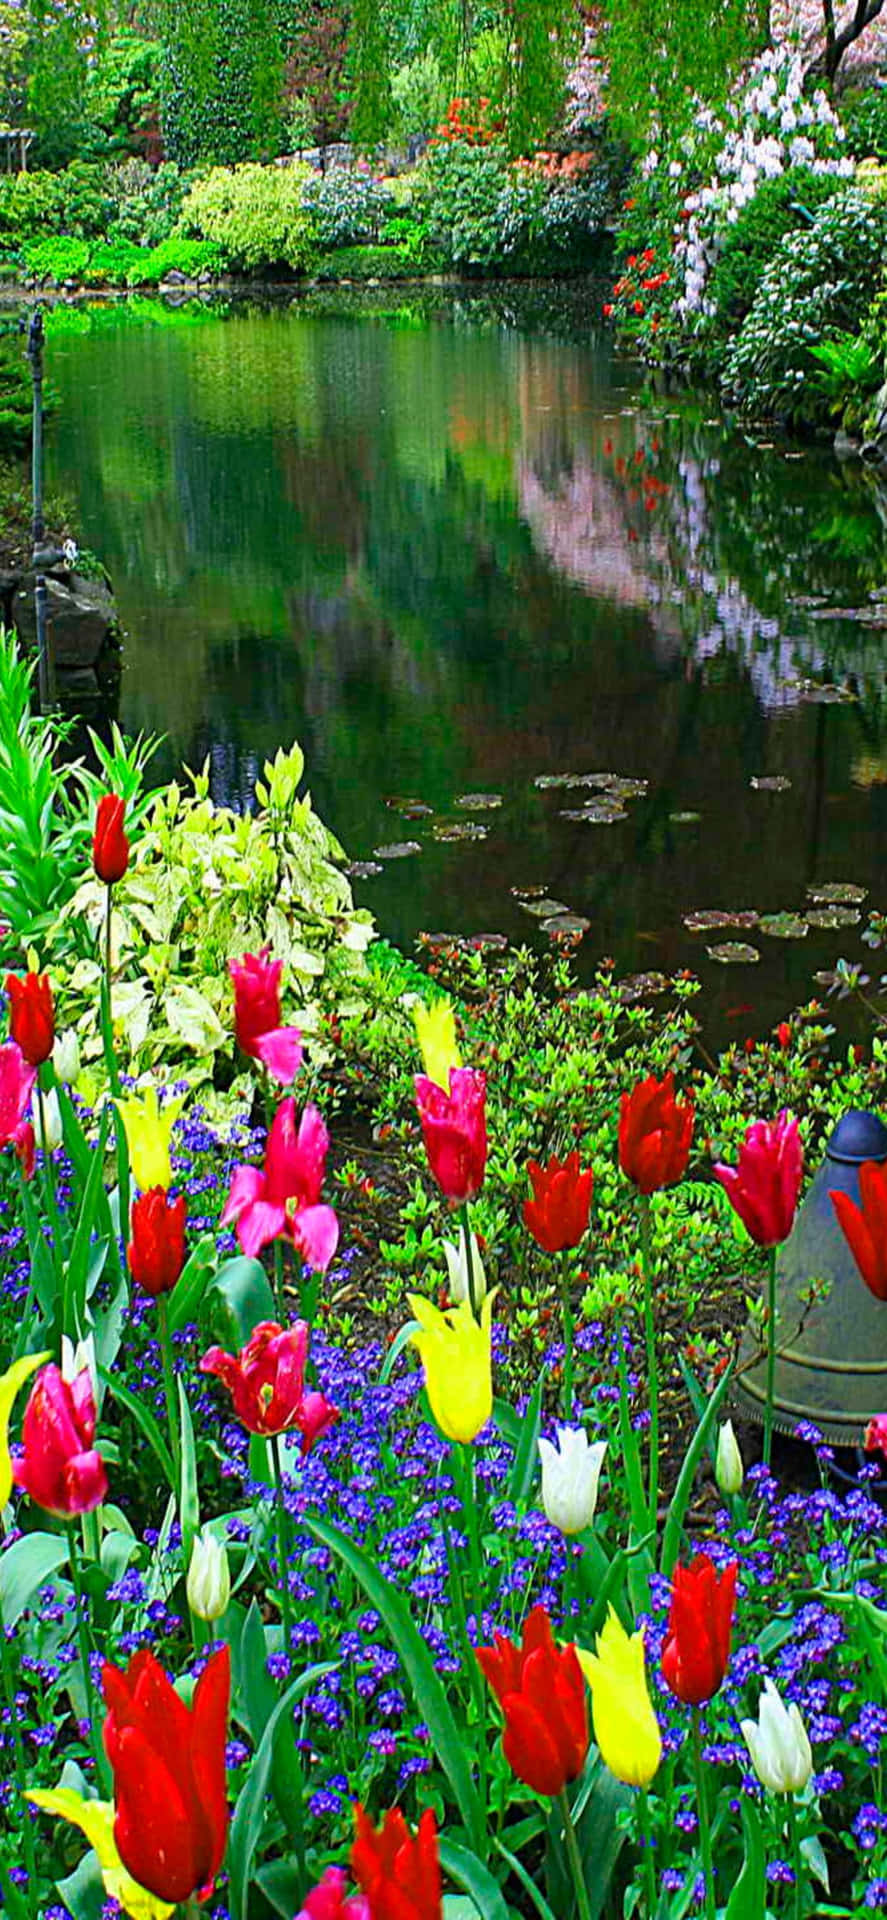 Disfrutade La Belleza De La Naturaleza Con El Fondo De Primavera Del Pixel 3.